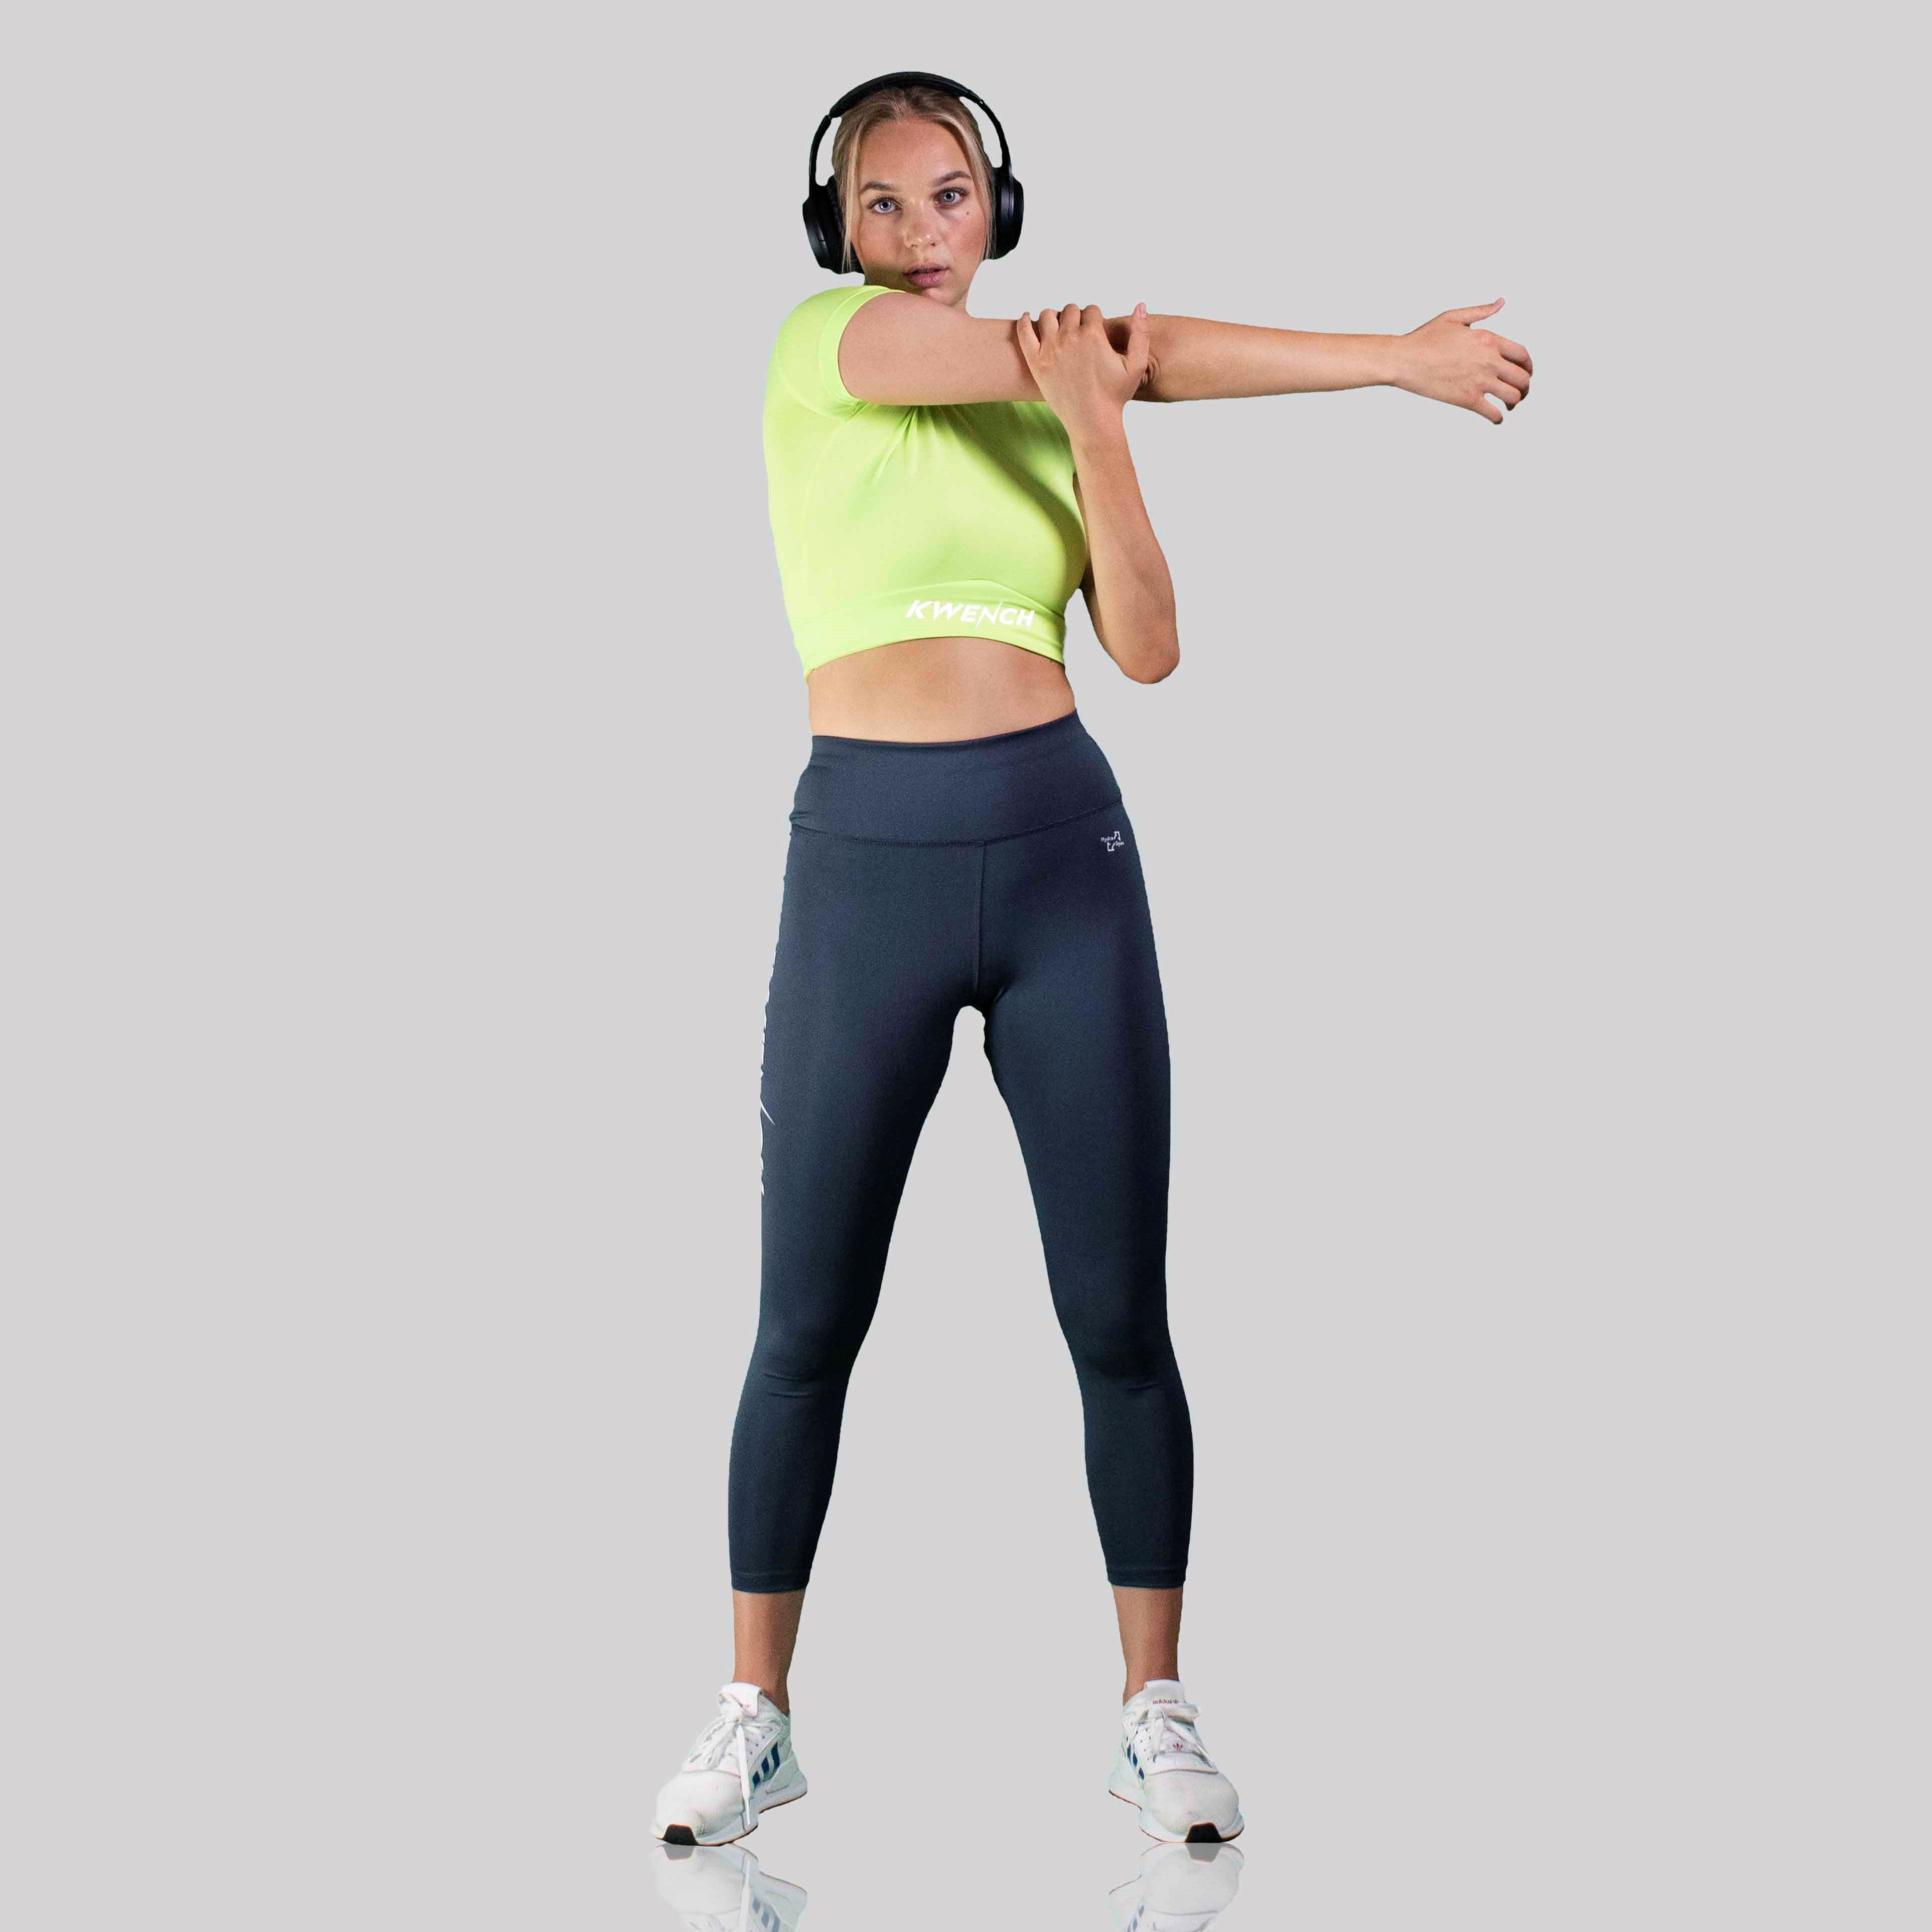 Kwench Hustle Womens Gym Yoga top Tshirt Tank